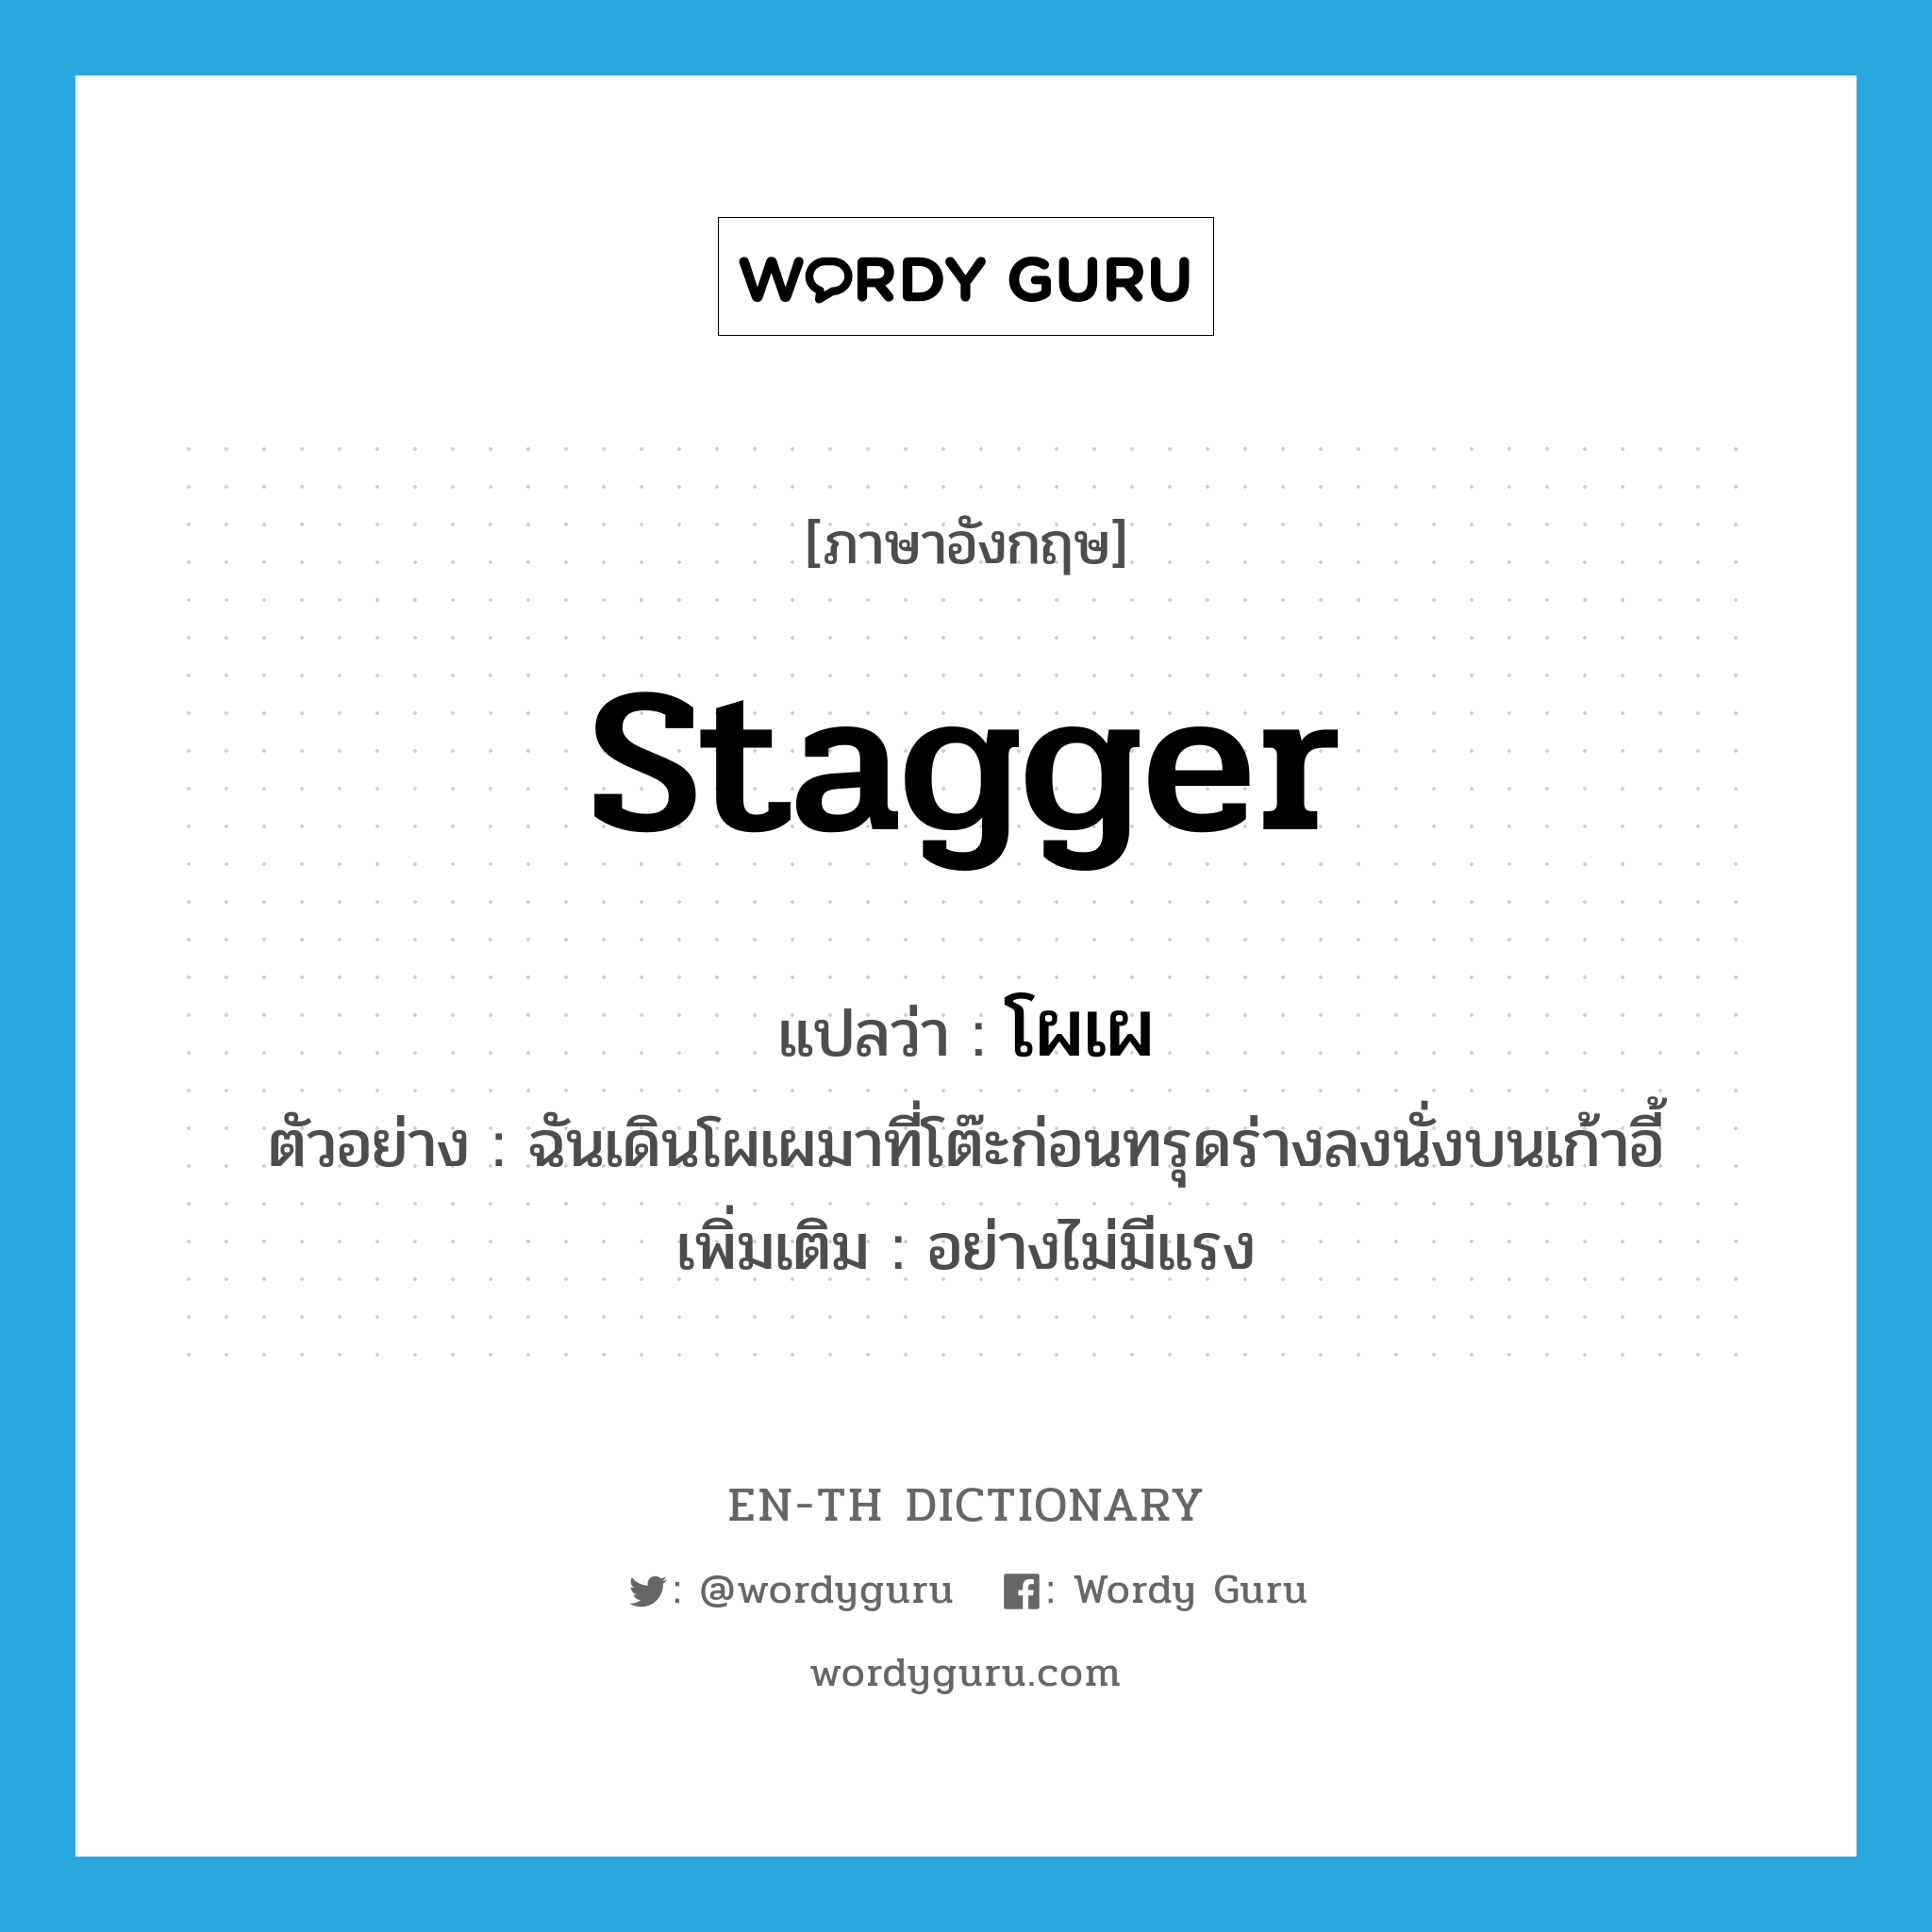 stagger แปลว่า?, คำศัพท์ภาษาอังกฤษ stagger แปลว่า โผเผ ประเภท ADV ตัวอย่าง ฉันเดินโผเผมาที่โต๊ะก่อนทรุดร่างลงนั่งบนเก้าอี้ เพิ่มเติม อย่างไม่มีแรง หมวด ADV